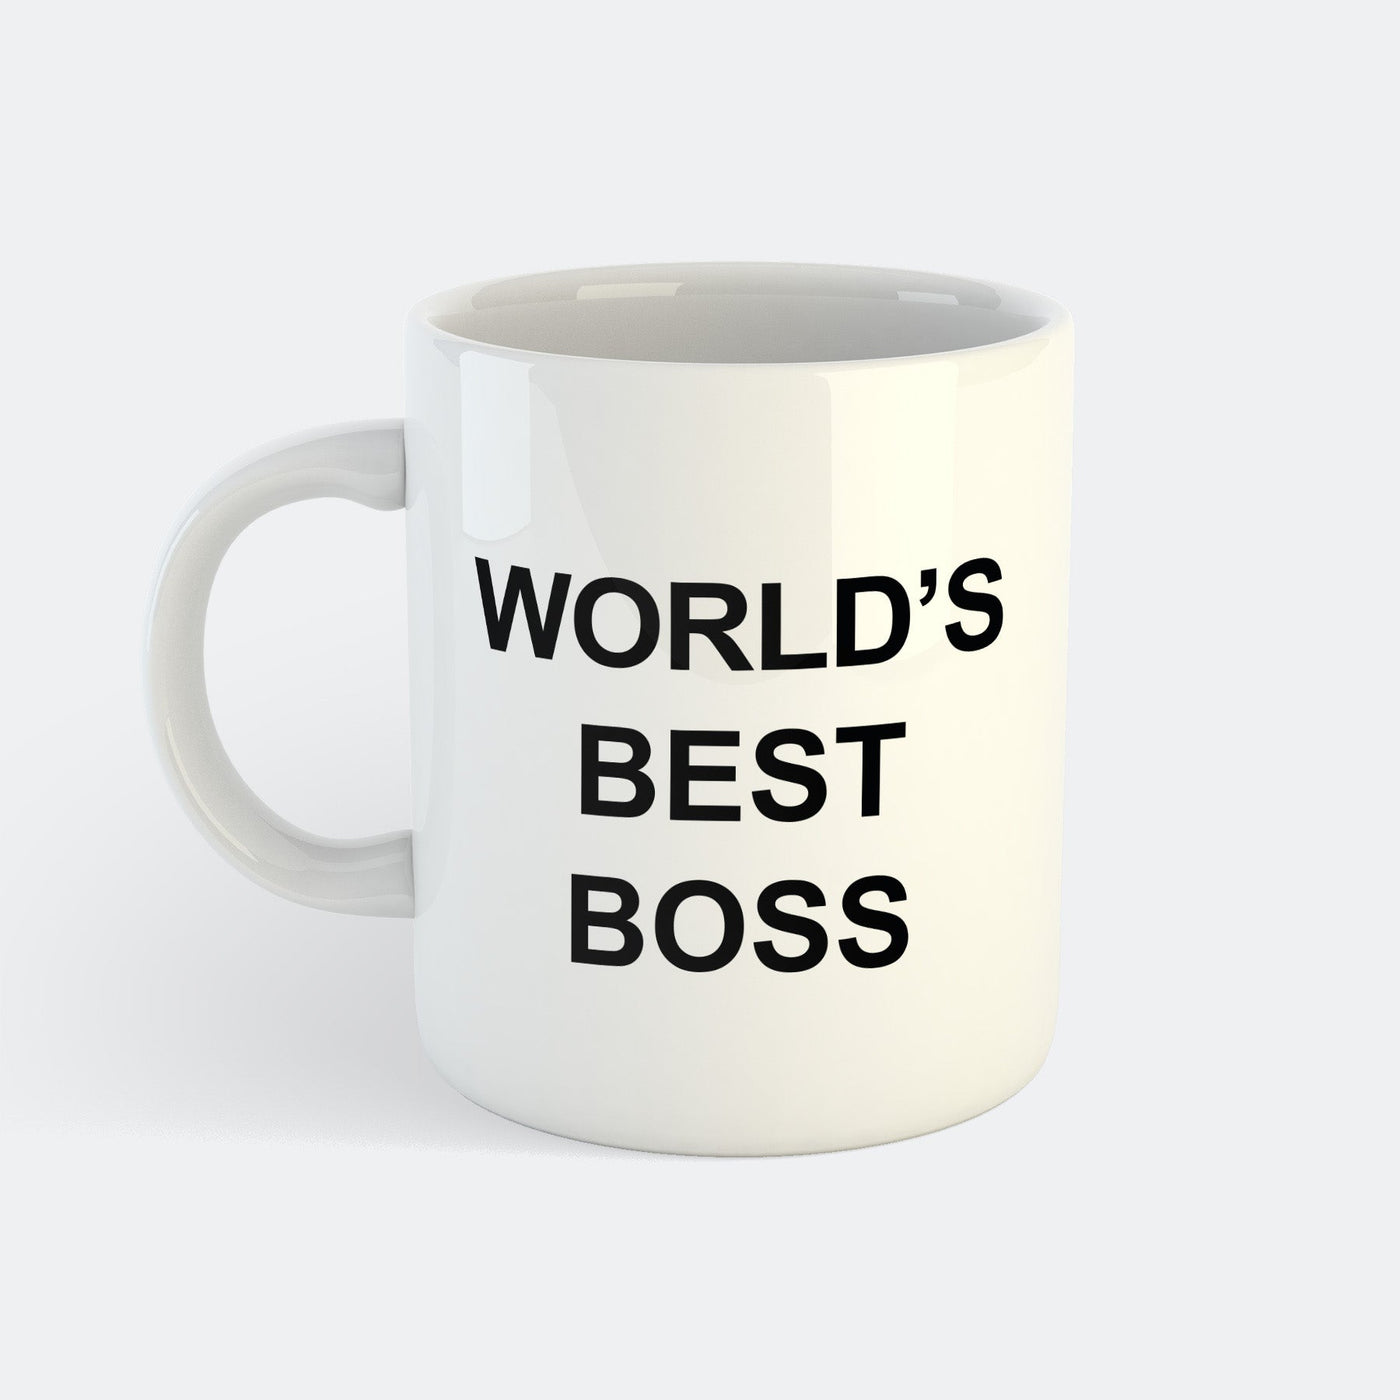 World's Best Boss Mugg